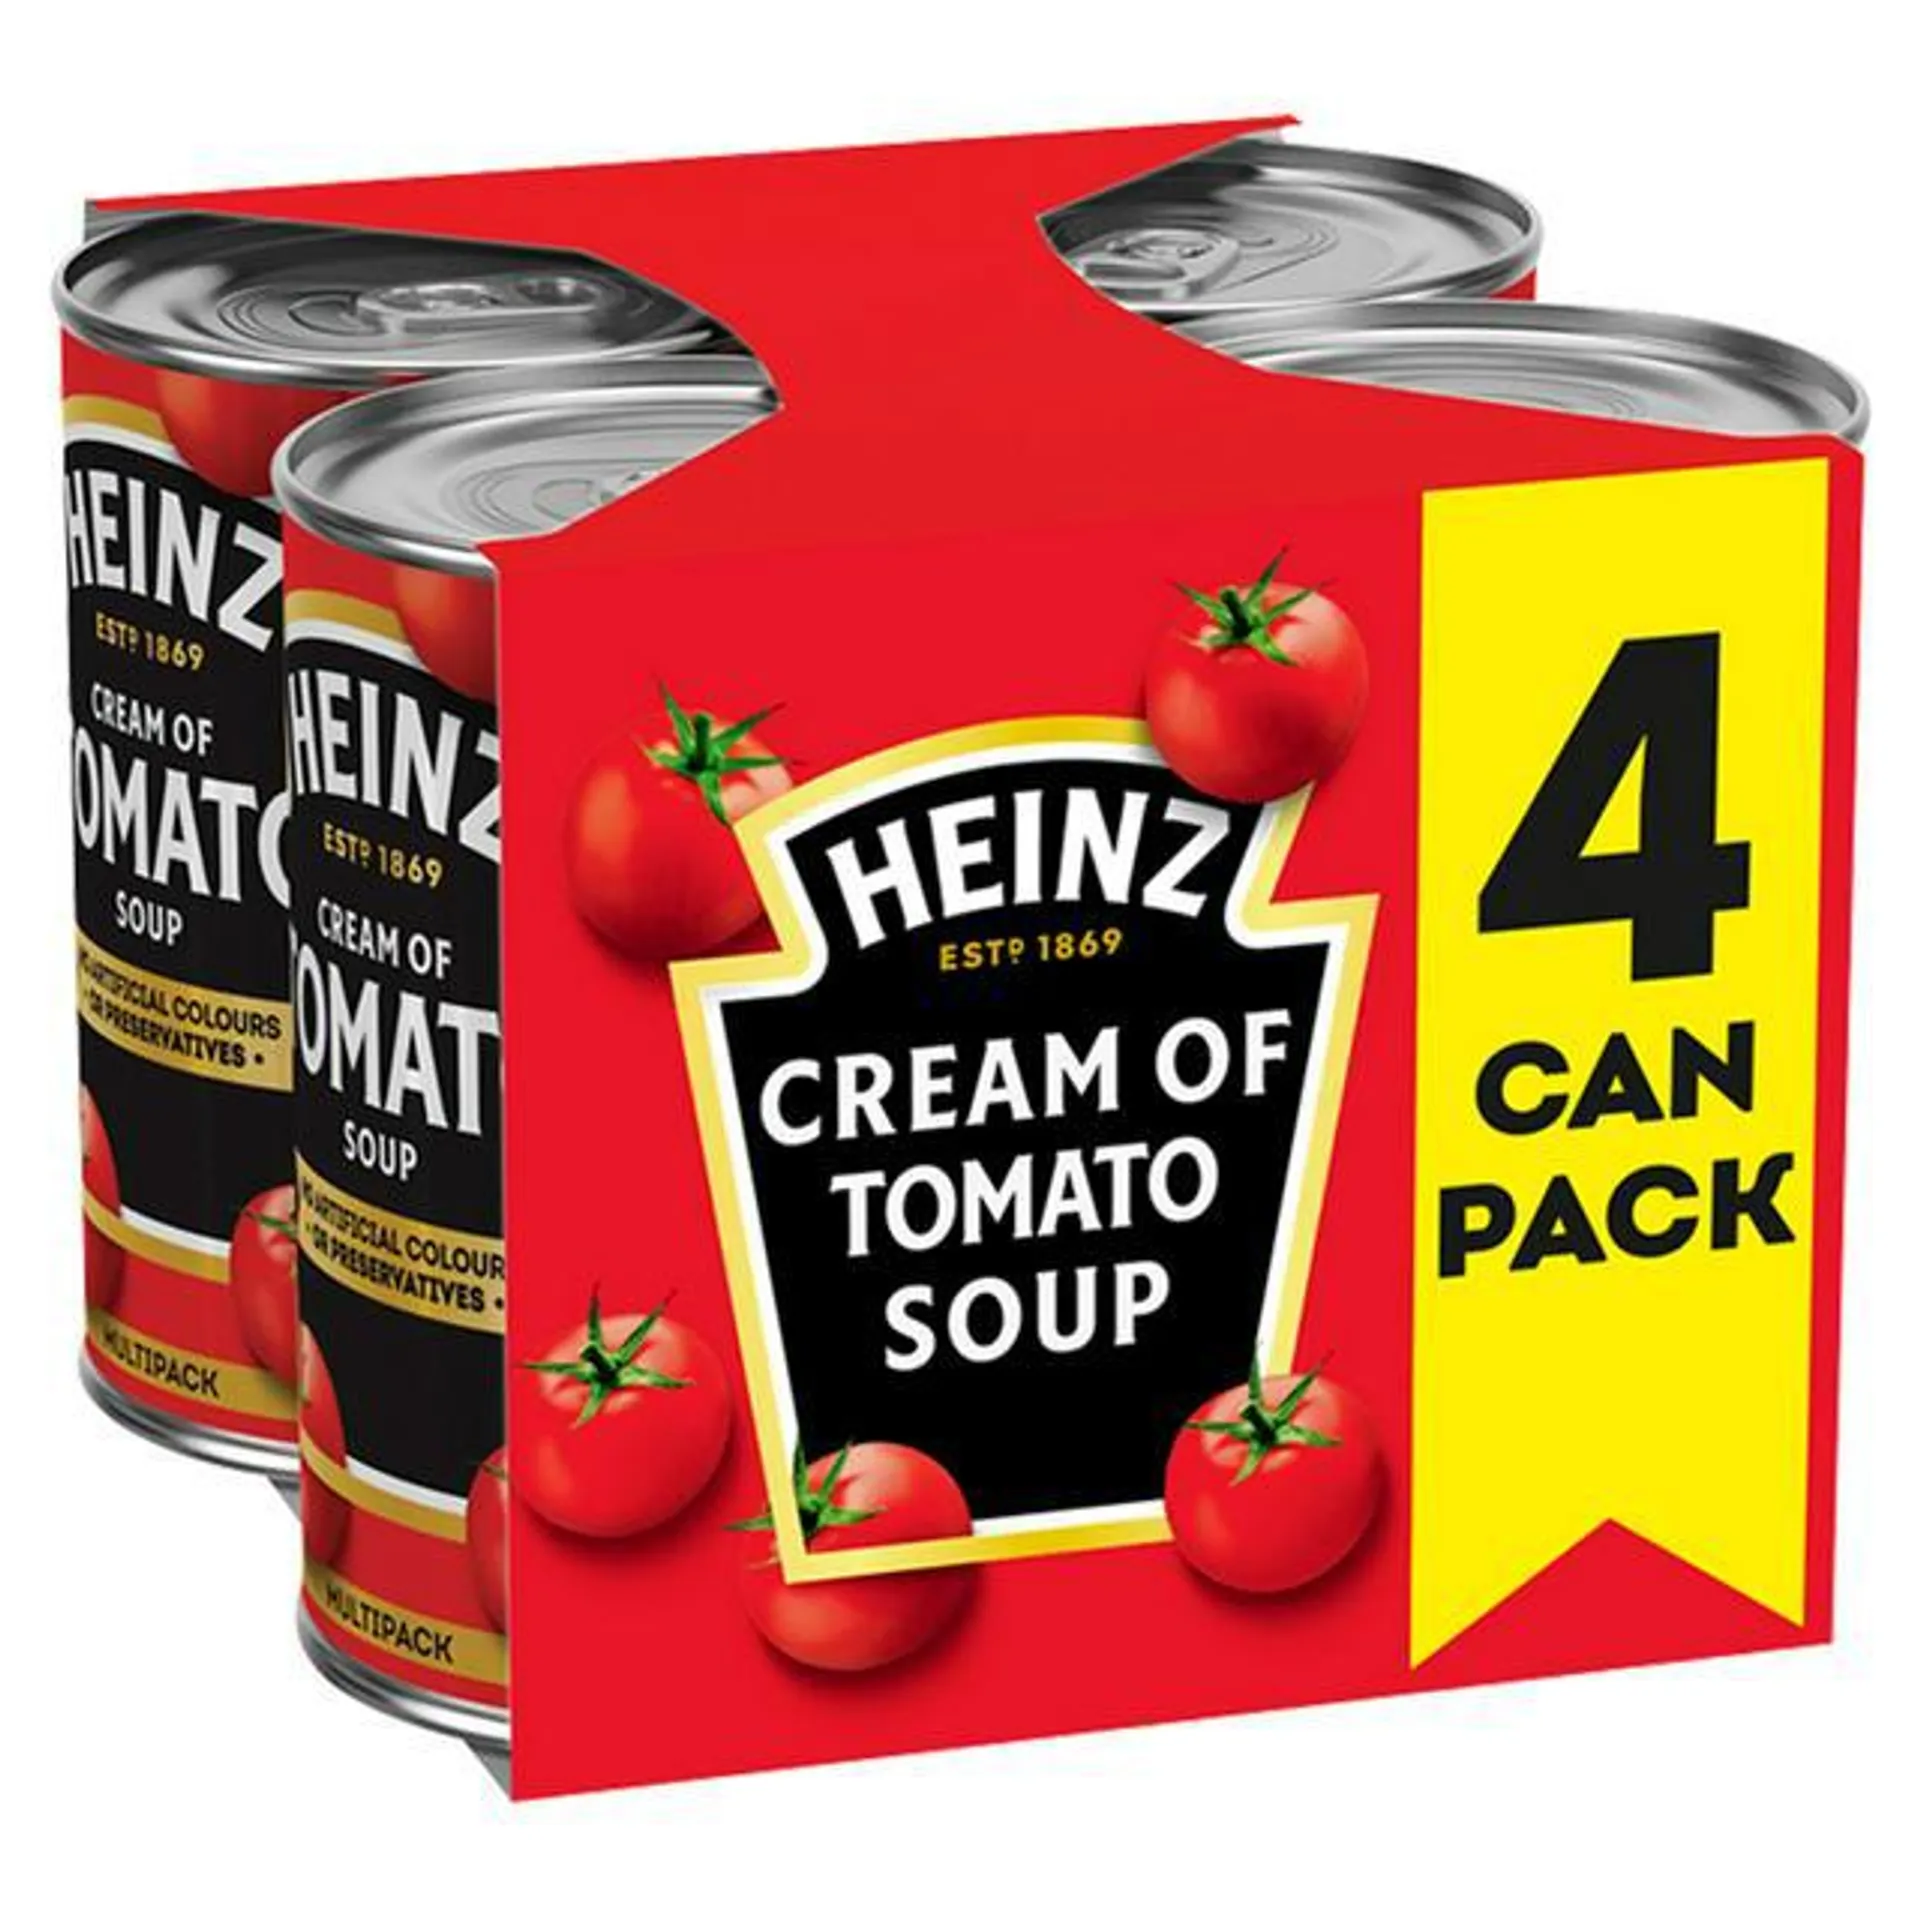 Heinz Cream of Tomato Soup x4 400g